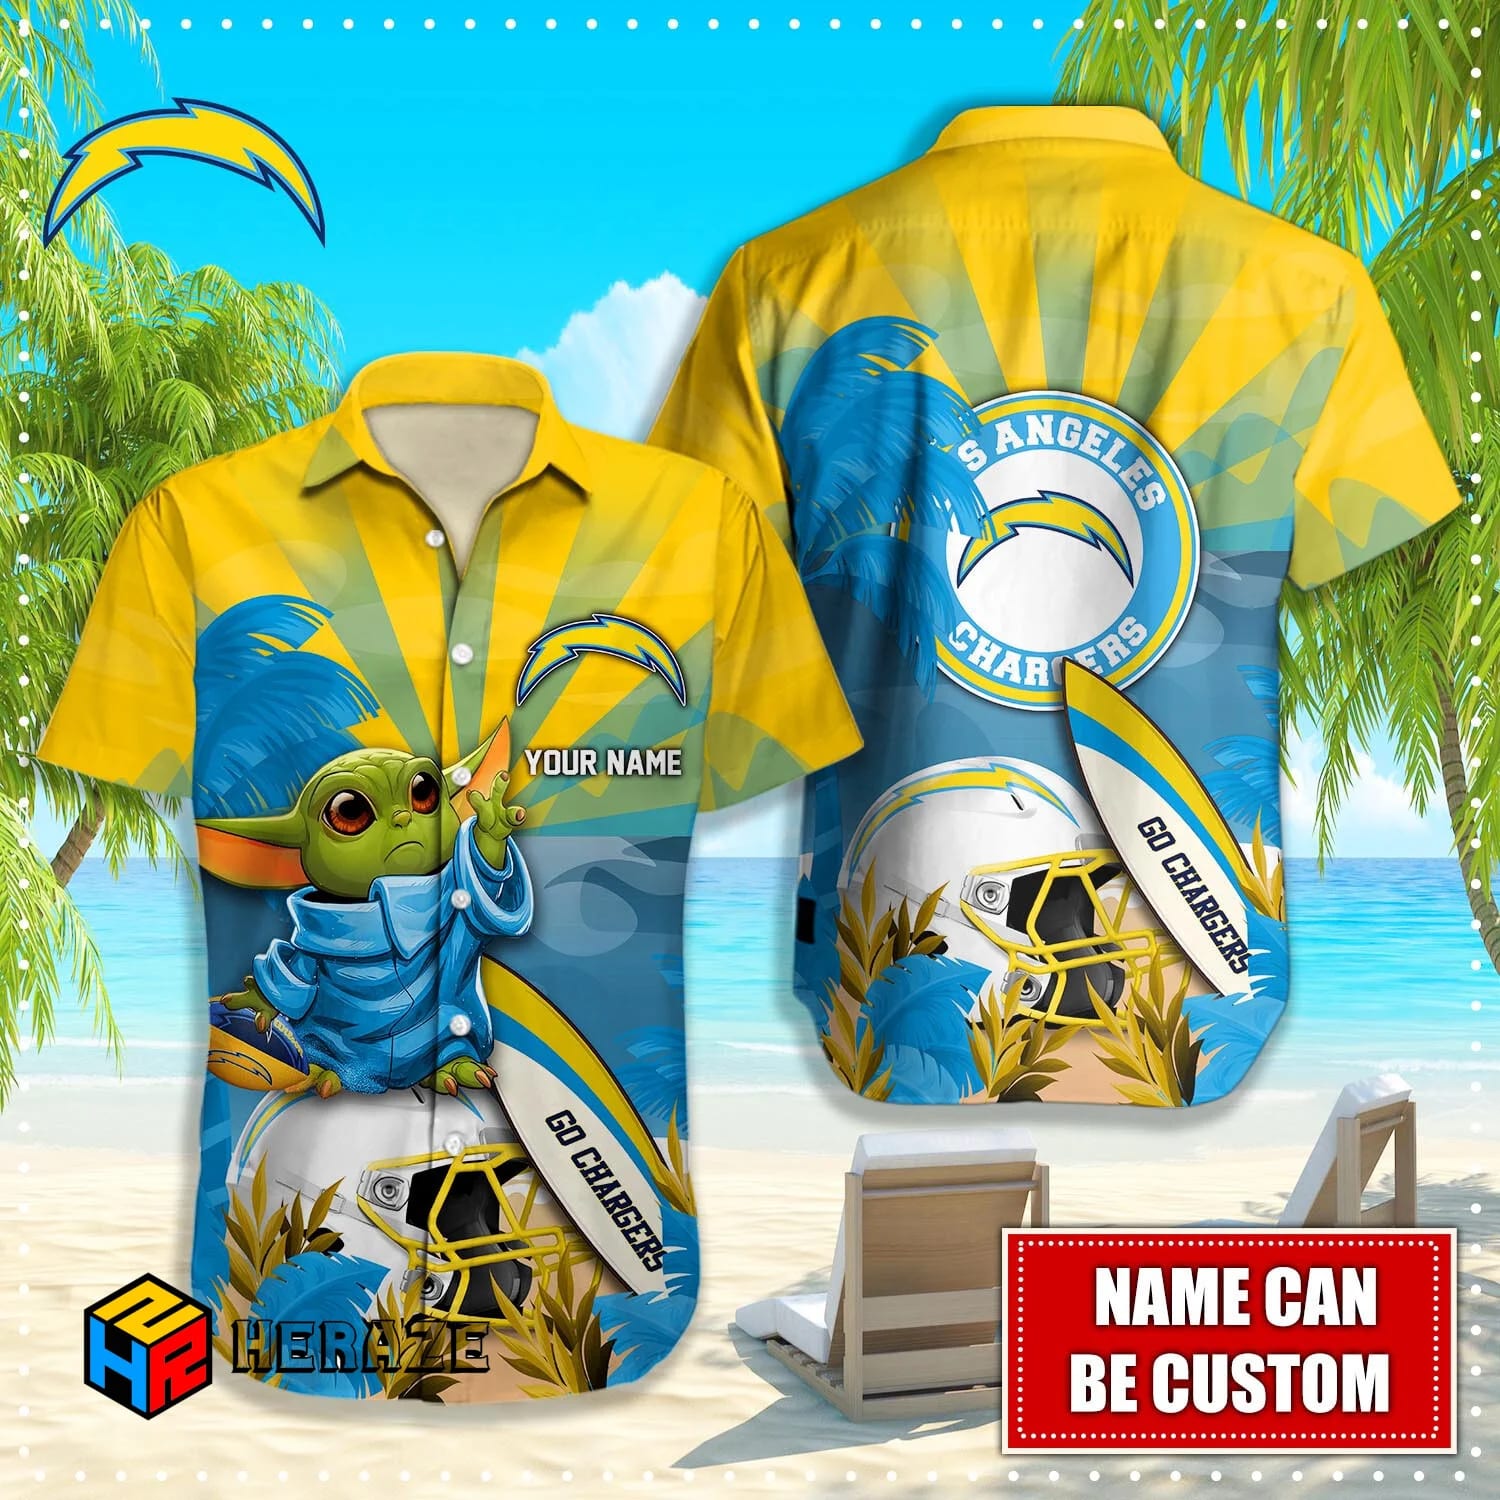 Custom Name Los Angeles Chargers NFL Aloha Hawaiian Shirt Yotcf6